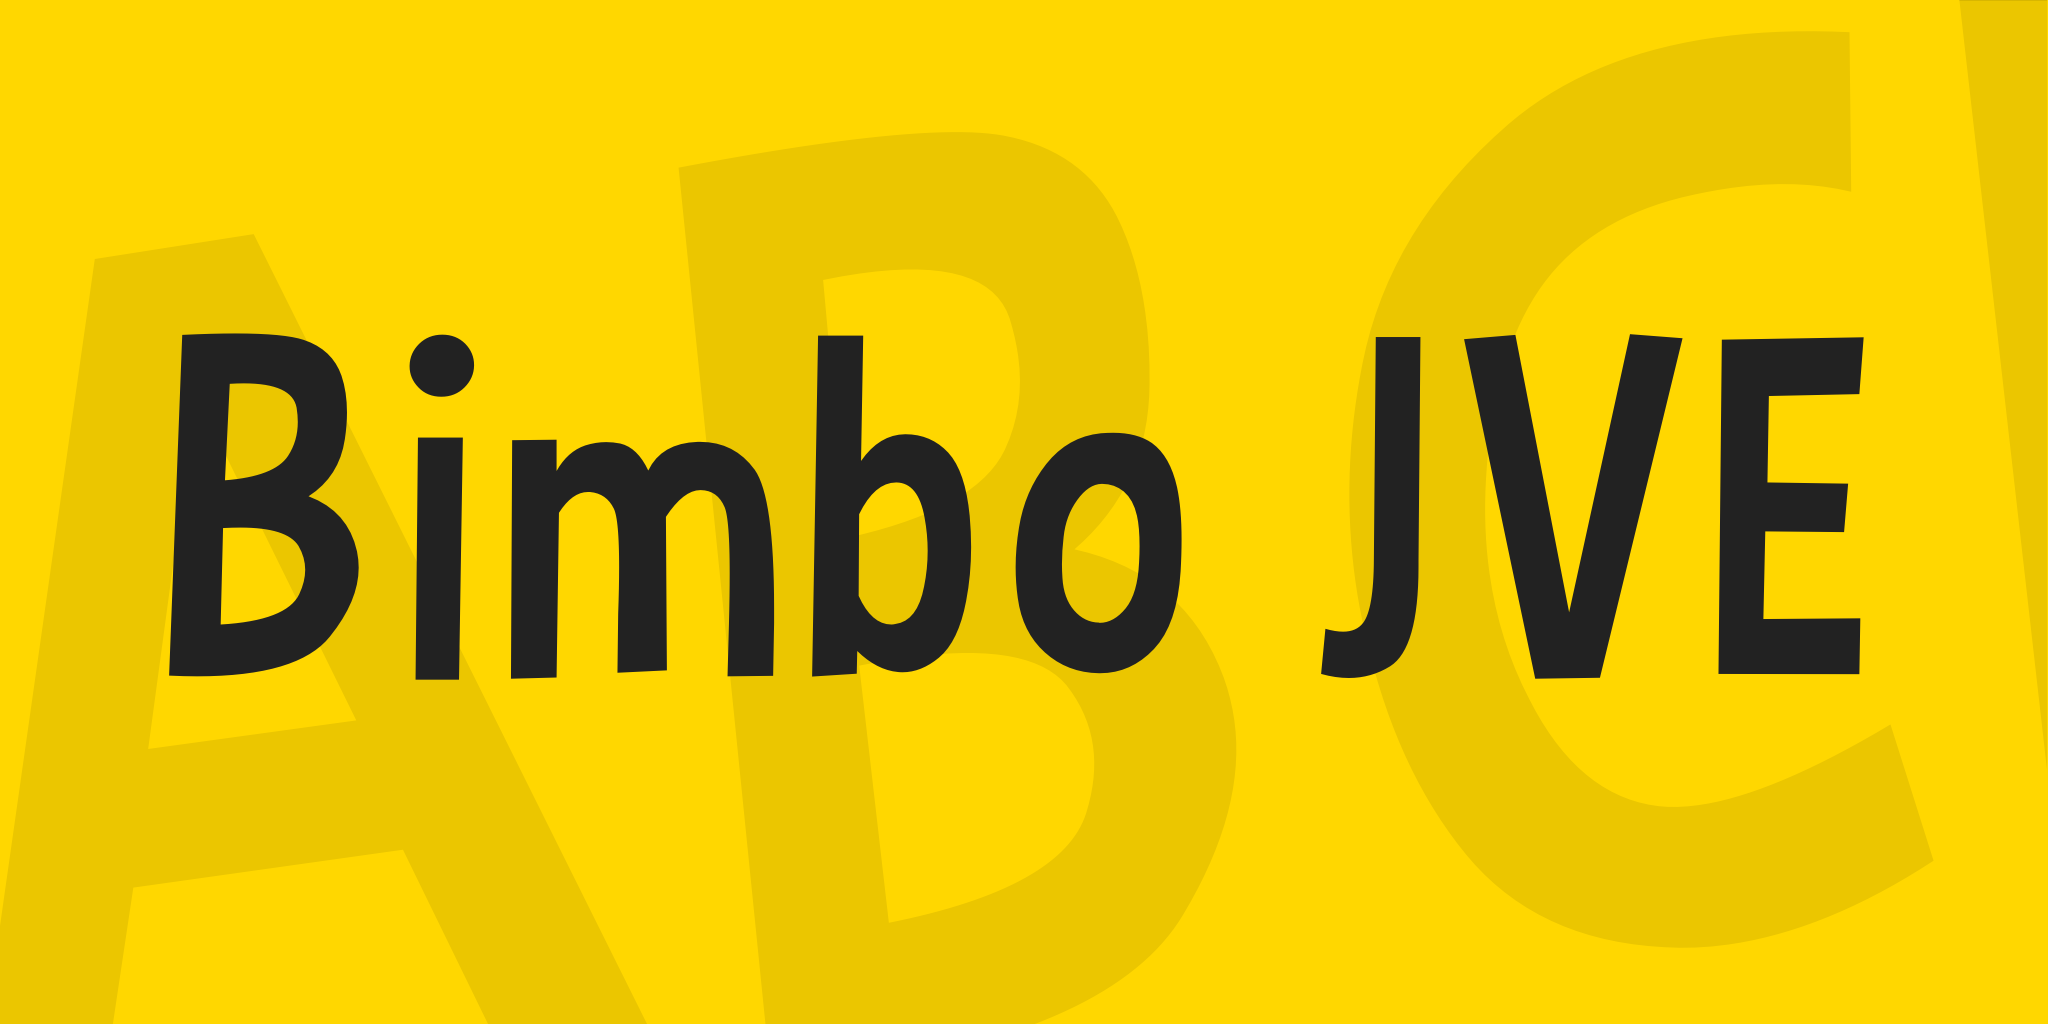 Bimbo Jve